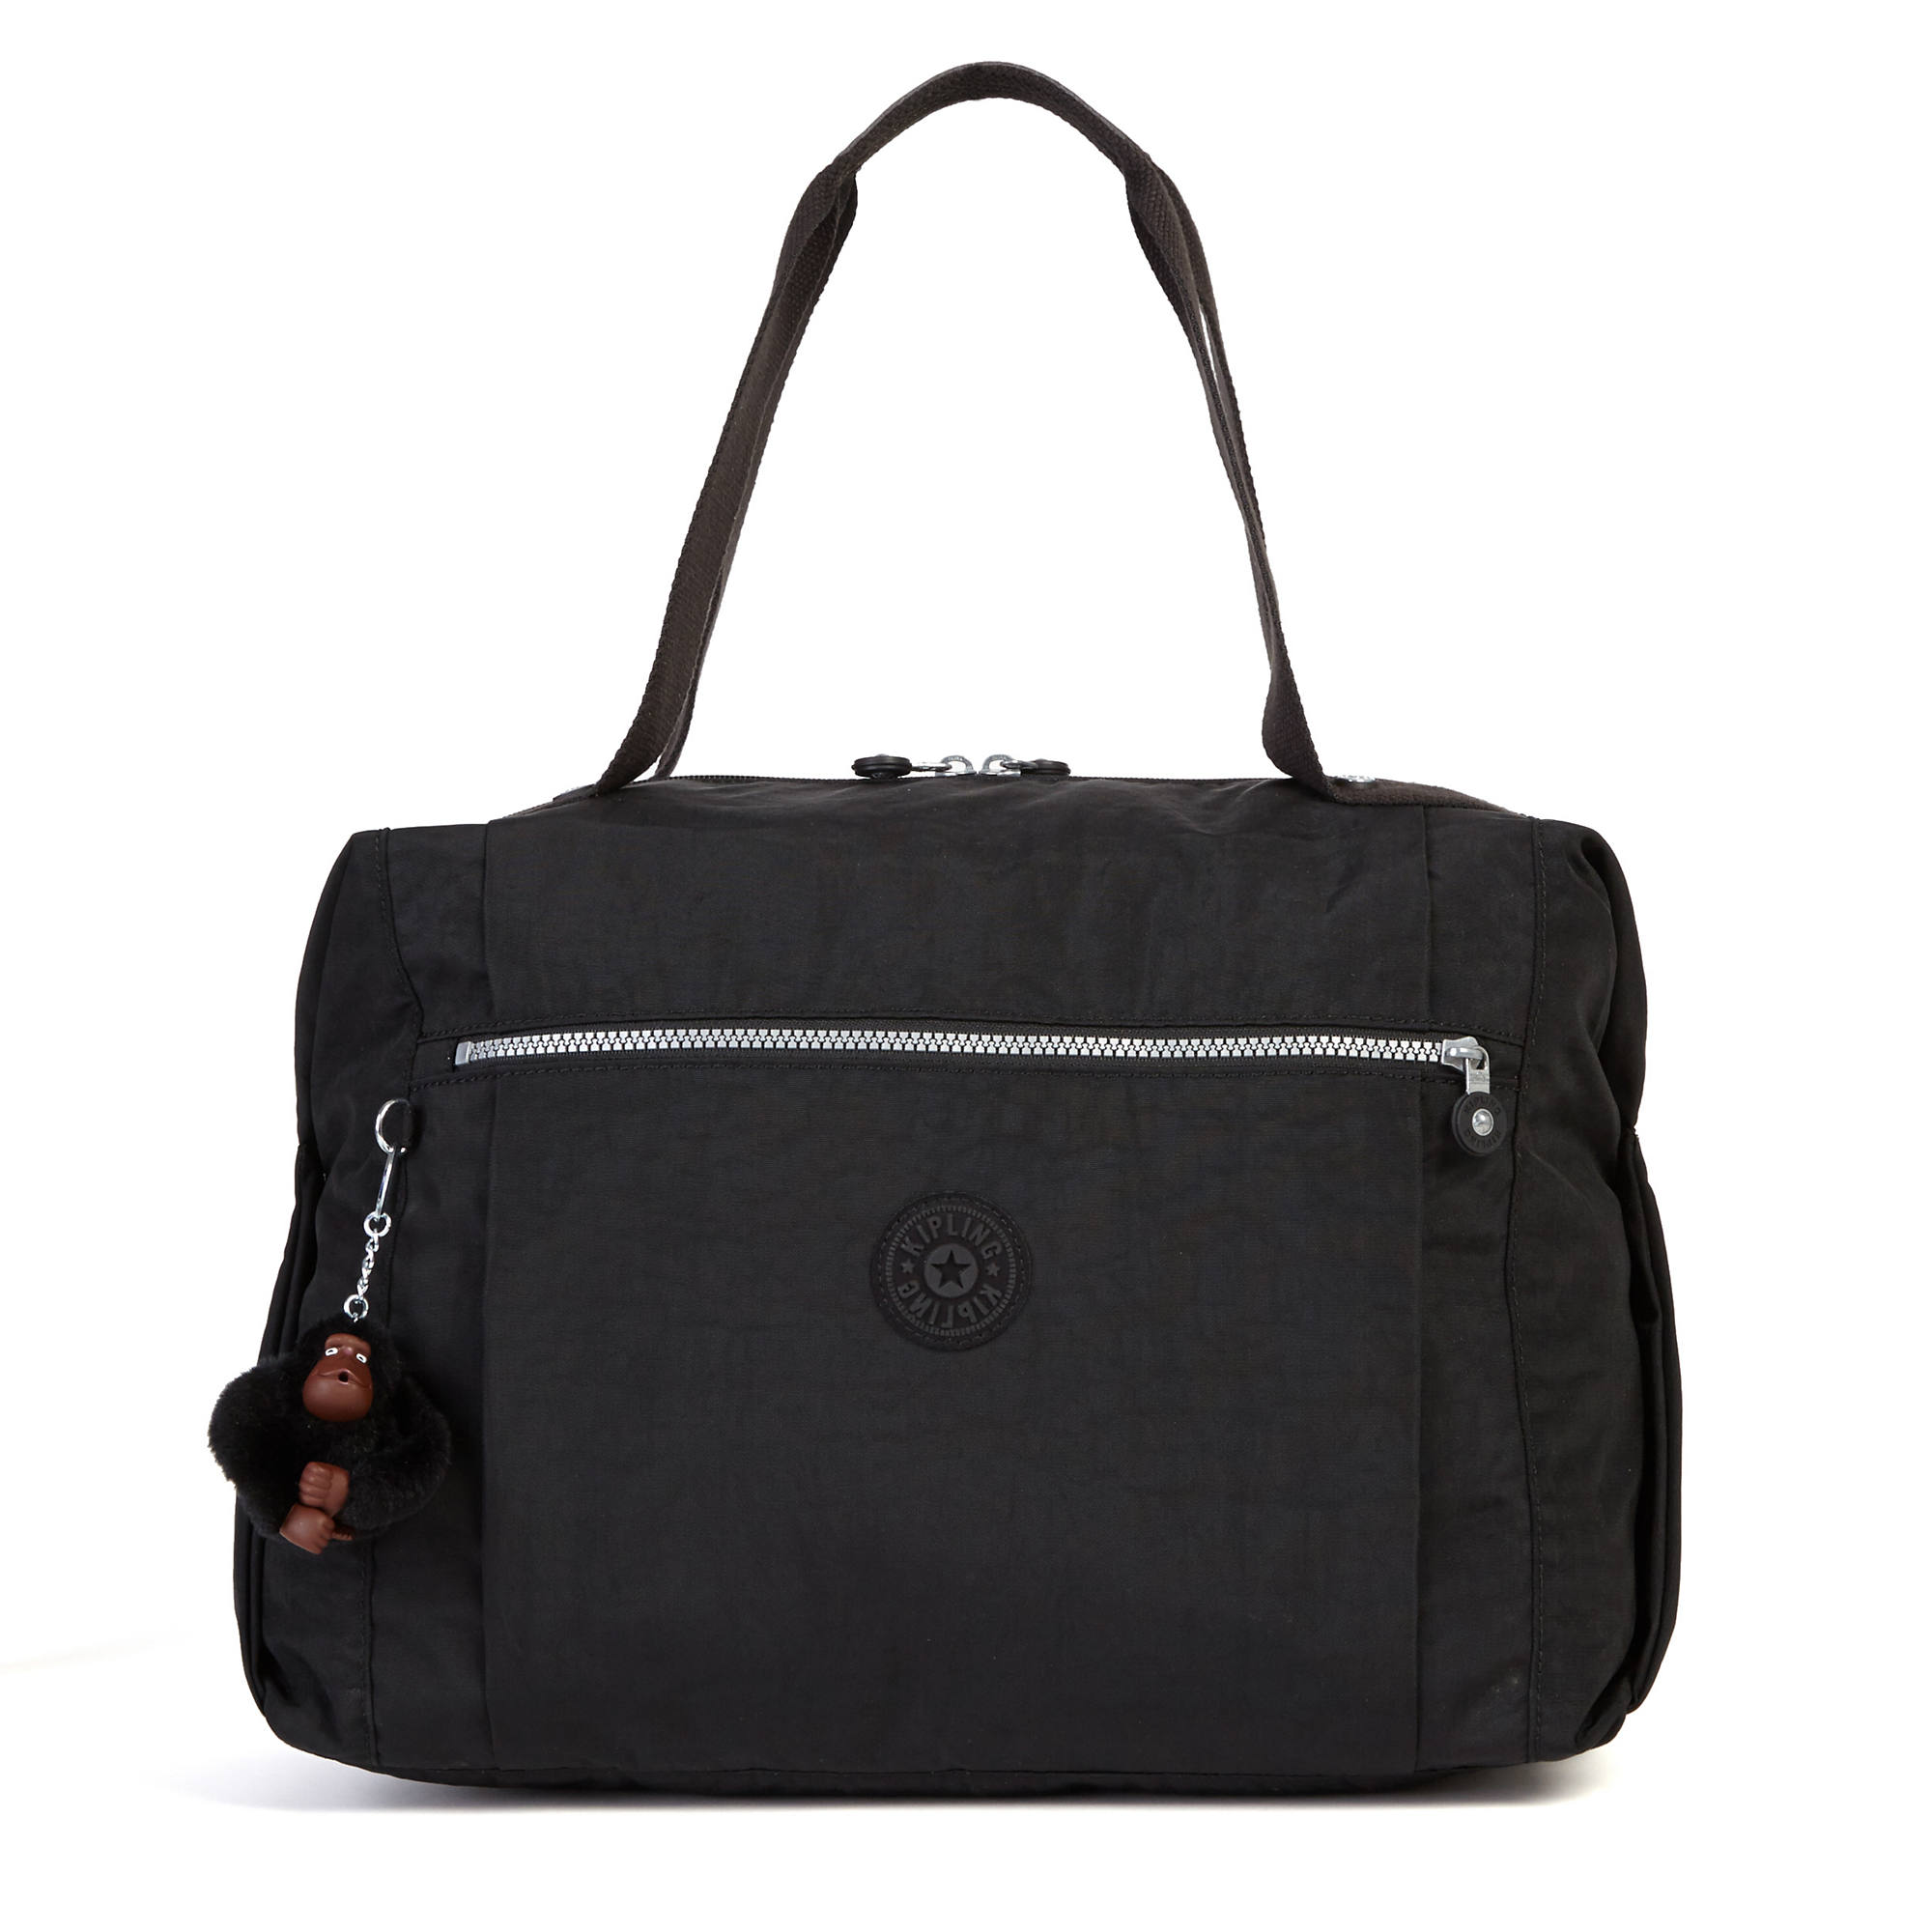 Kipling Ferra Weekender Duffel Bag | eBay